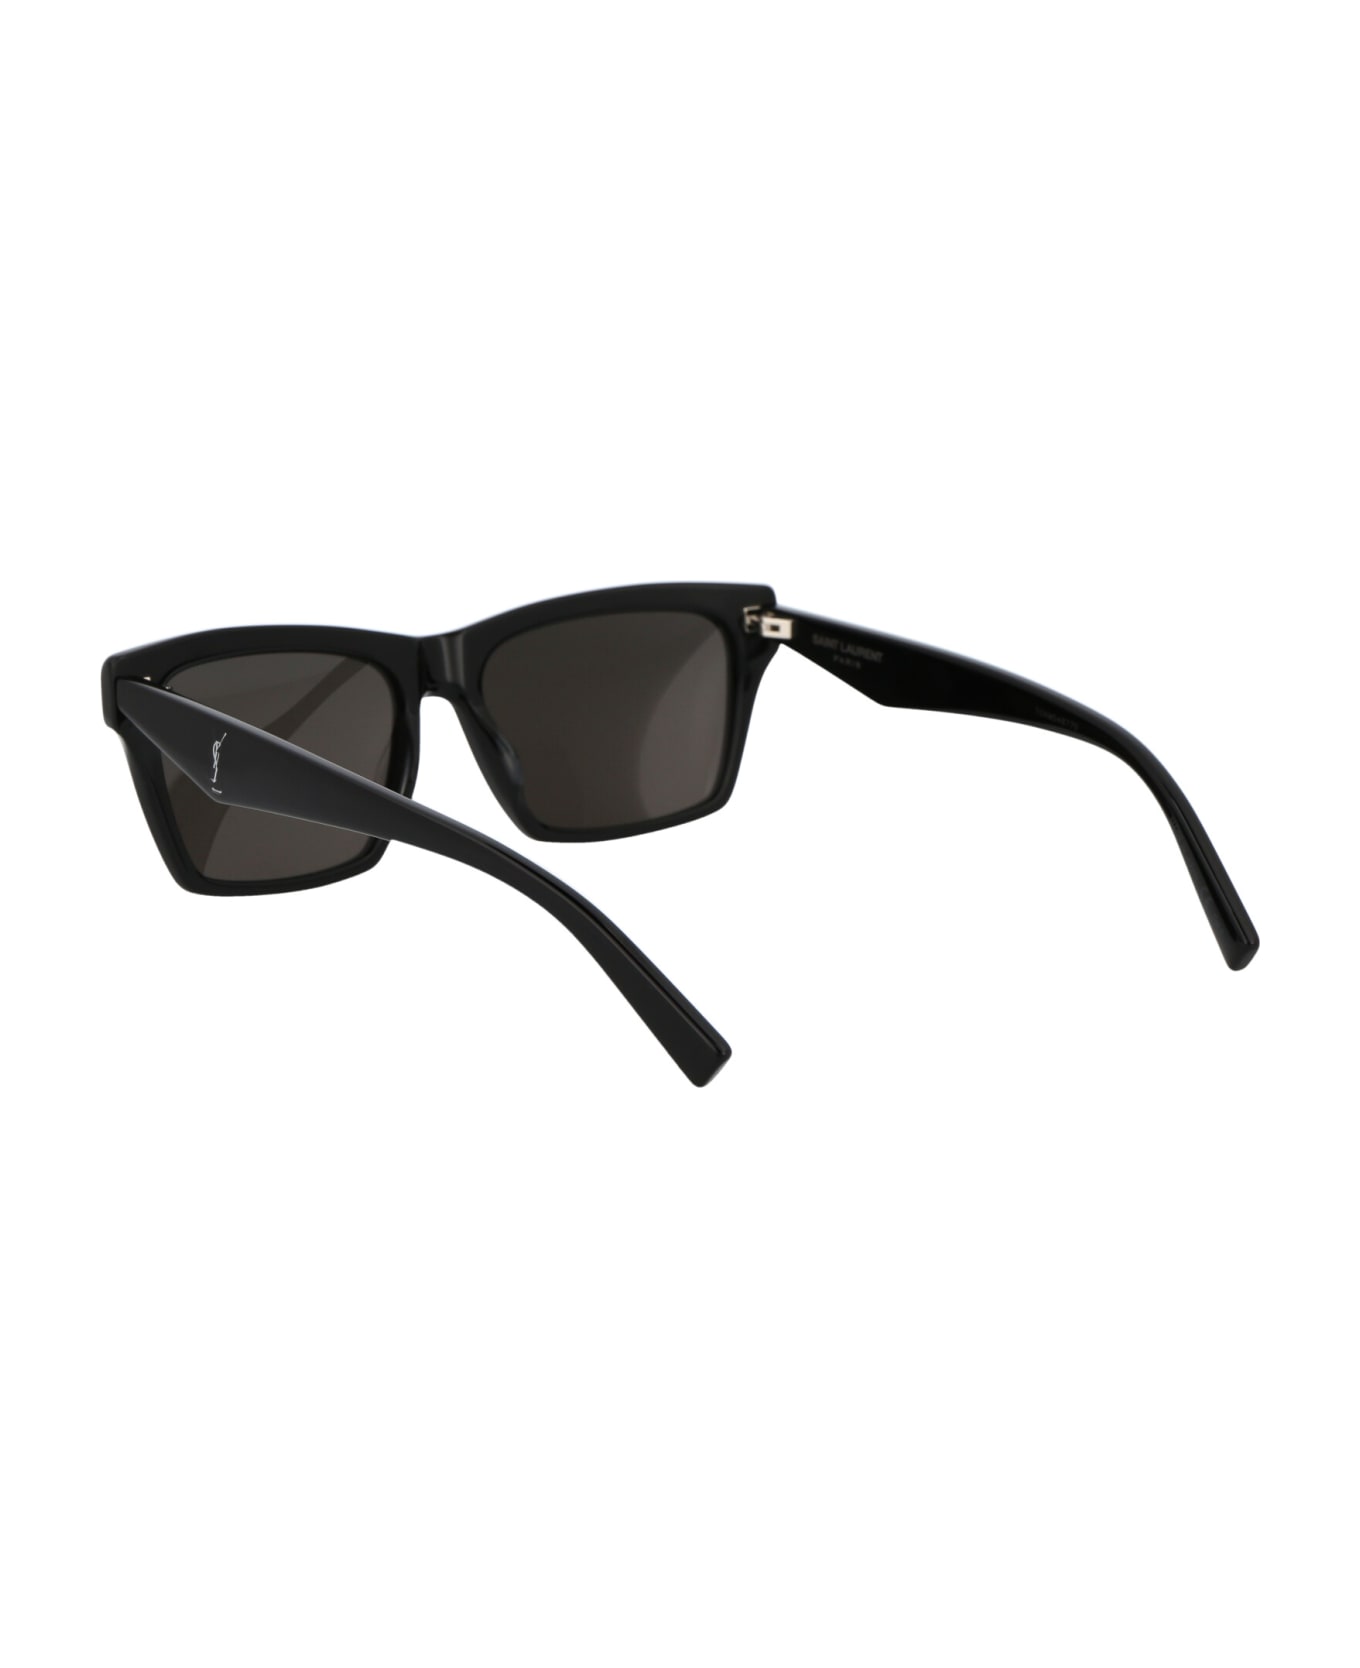 Saint Laurent Eyewear Sl M104 Sunglasses - 002 BLACK BLACK BLACK